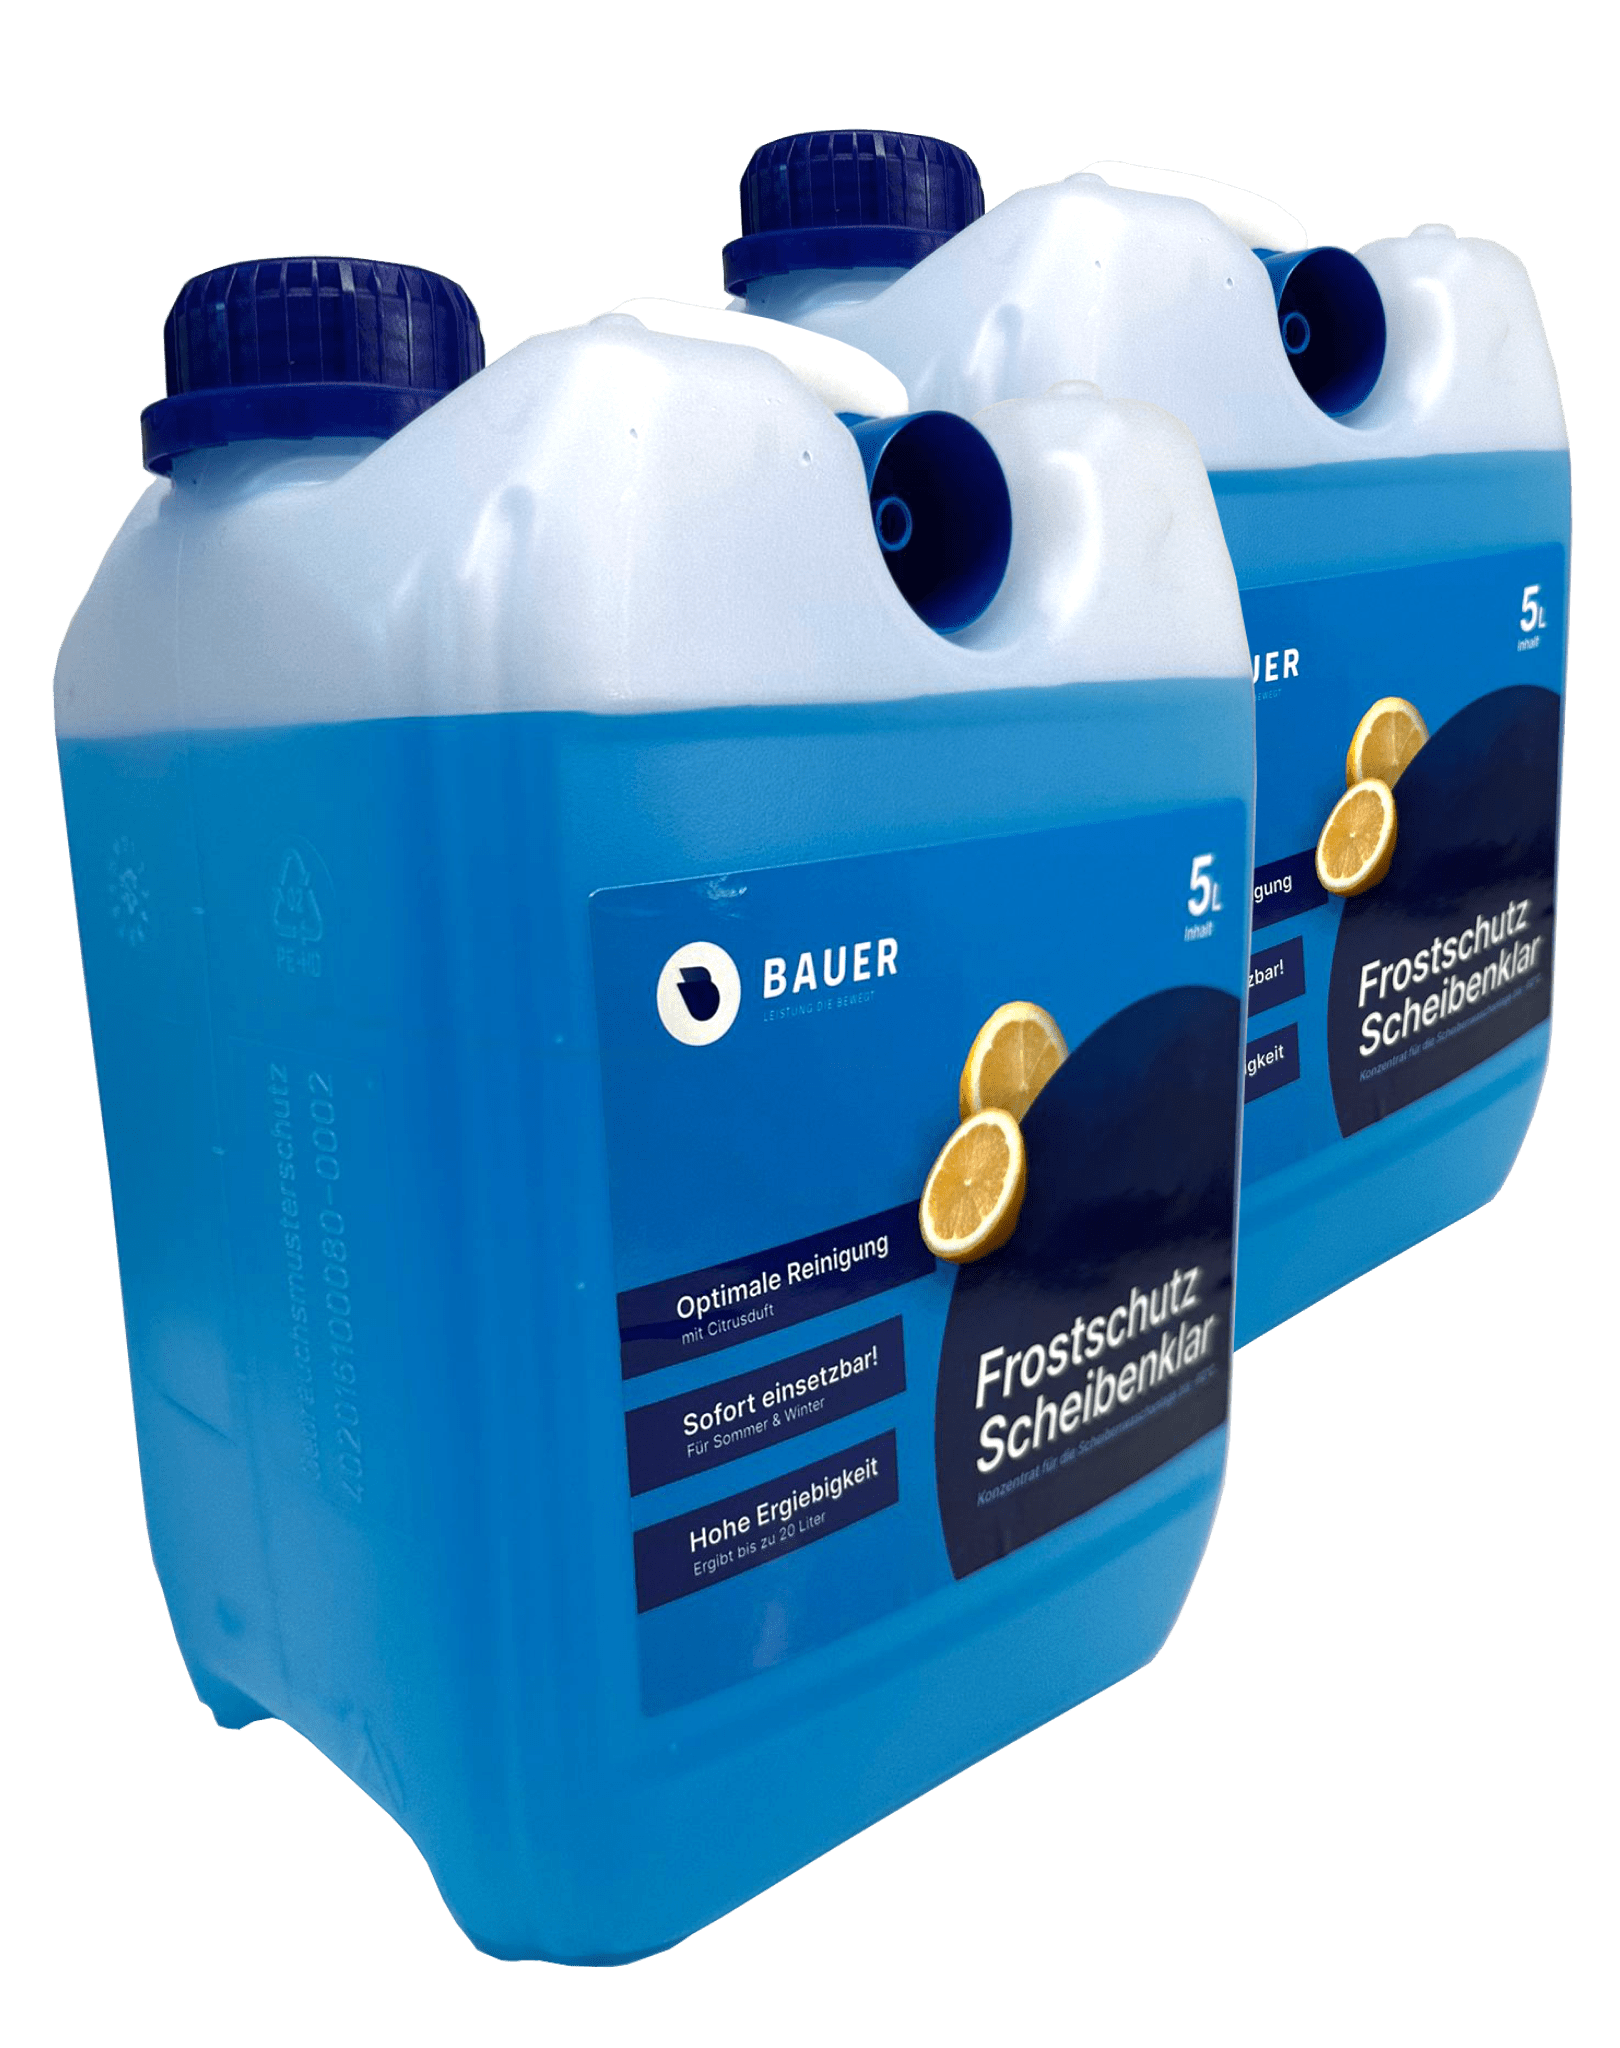 Kühlerfrostschutz blau 5 Liter online kaufen - im van beusekom